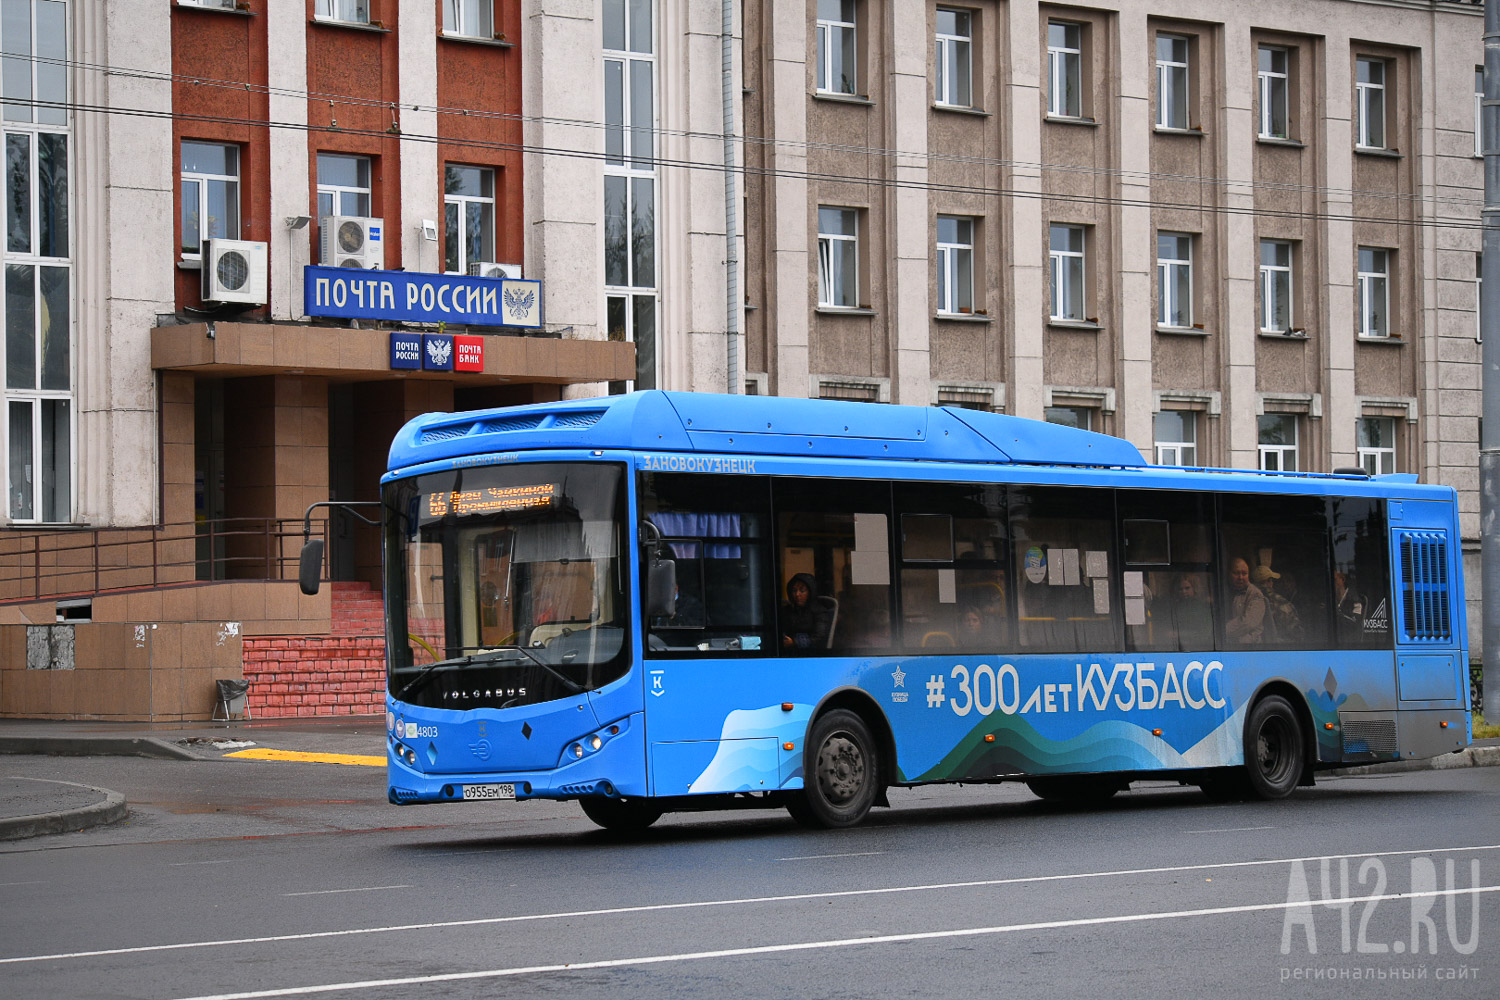 Cорвало клапаны, утечка газа: с синим автобусом в Новокузнецке возникли проблемы